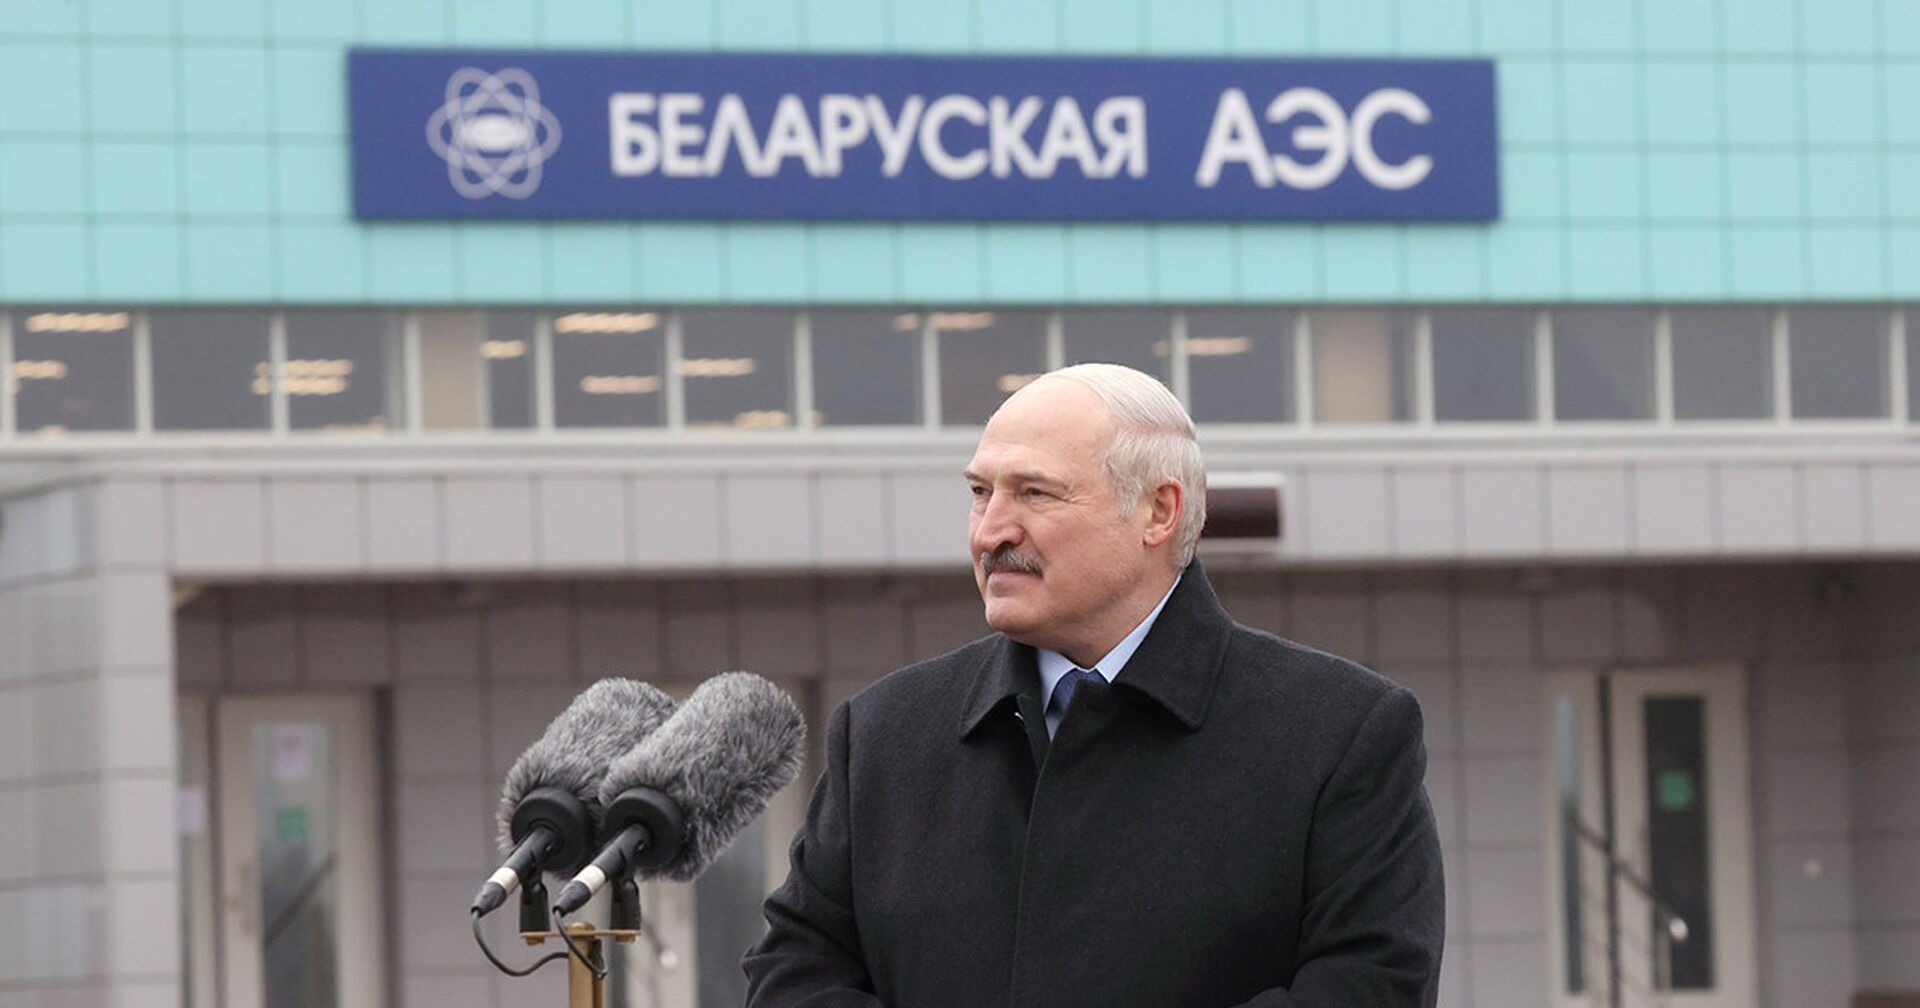 Президент Беларуси Александр Лукашенко на открытии Белорусской АЭС - ИноСМИ, 1920, 09.11.2020